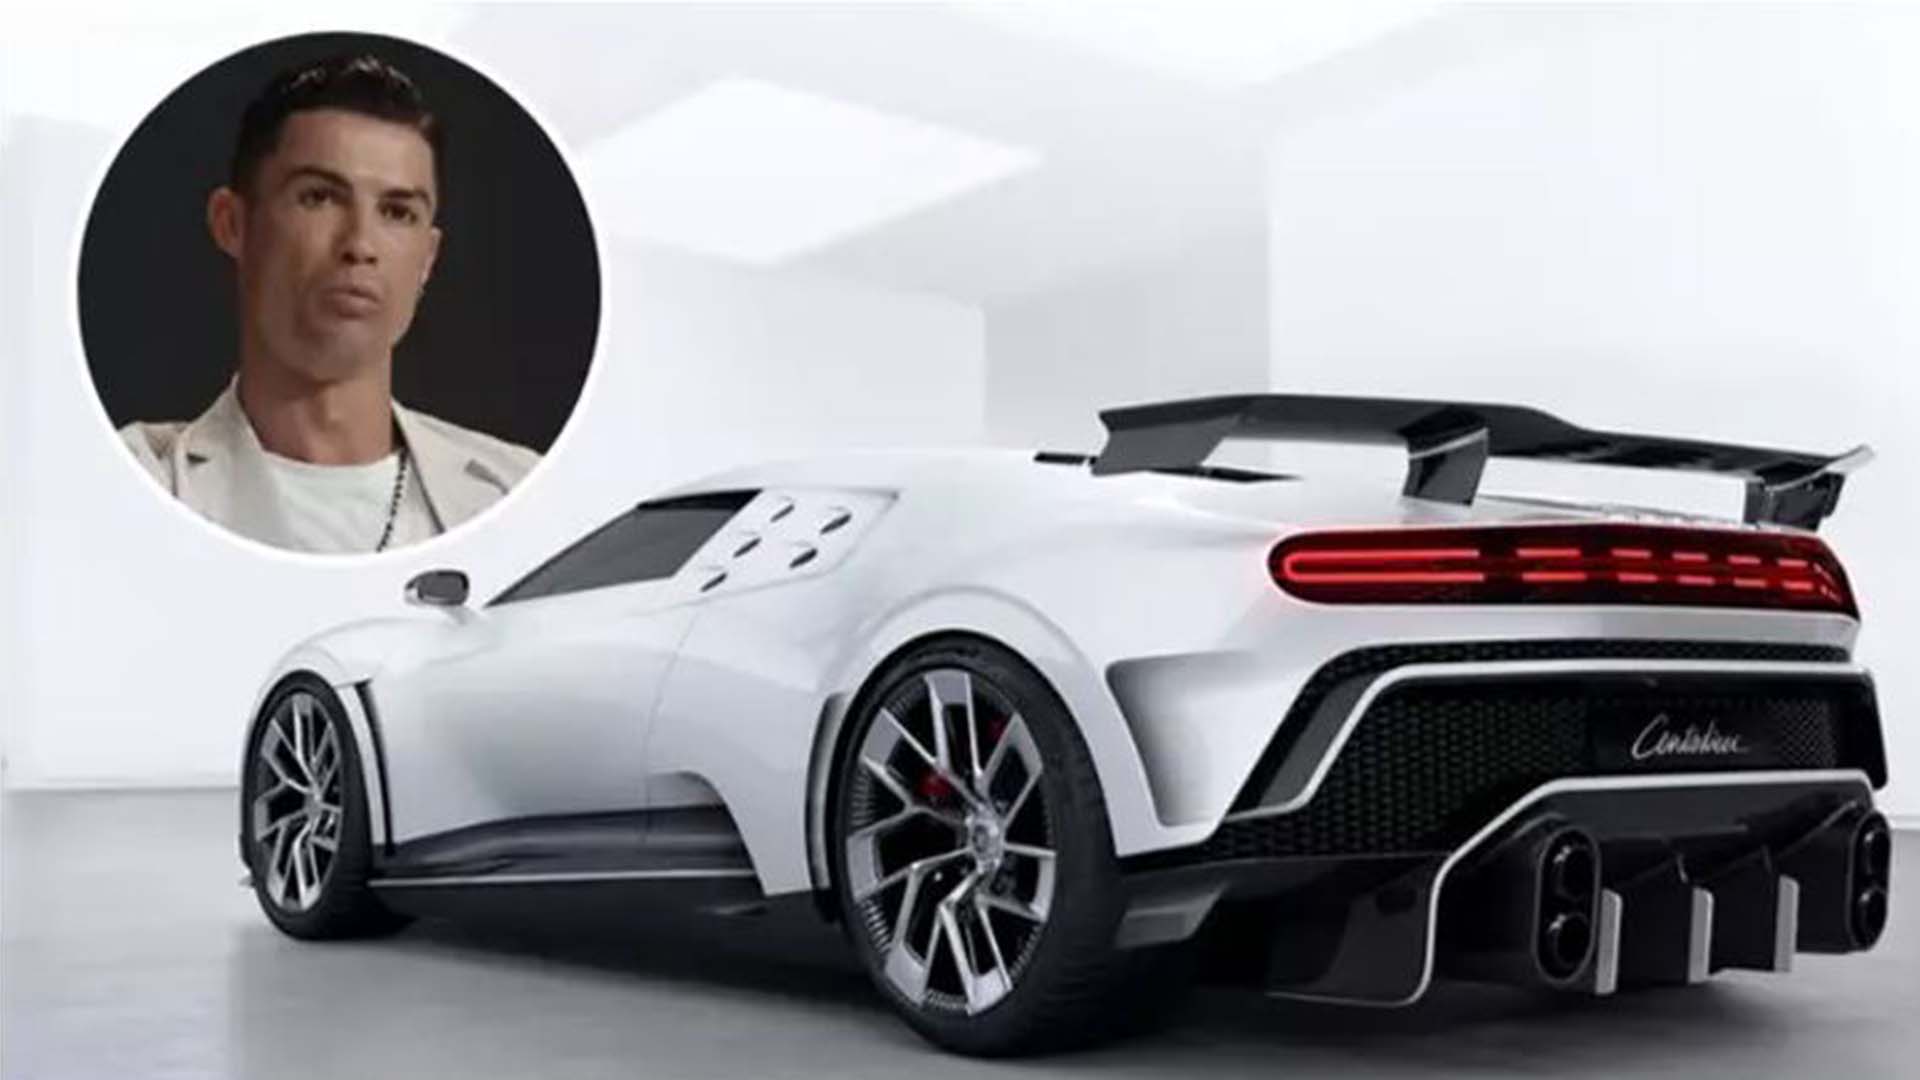 Cristiano Ronaldo’s Addition to His Incredible Car Collection: 'Purchases £8.5 Million Bugatti Centodieci'